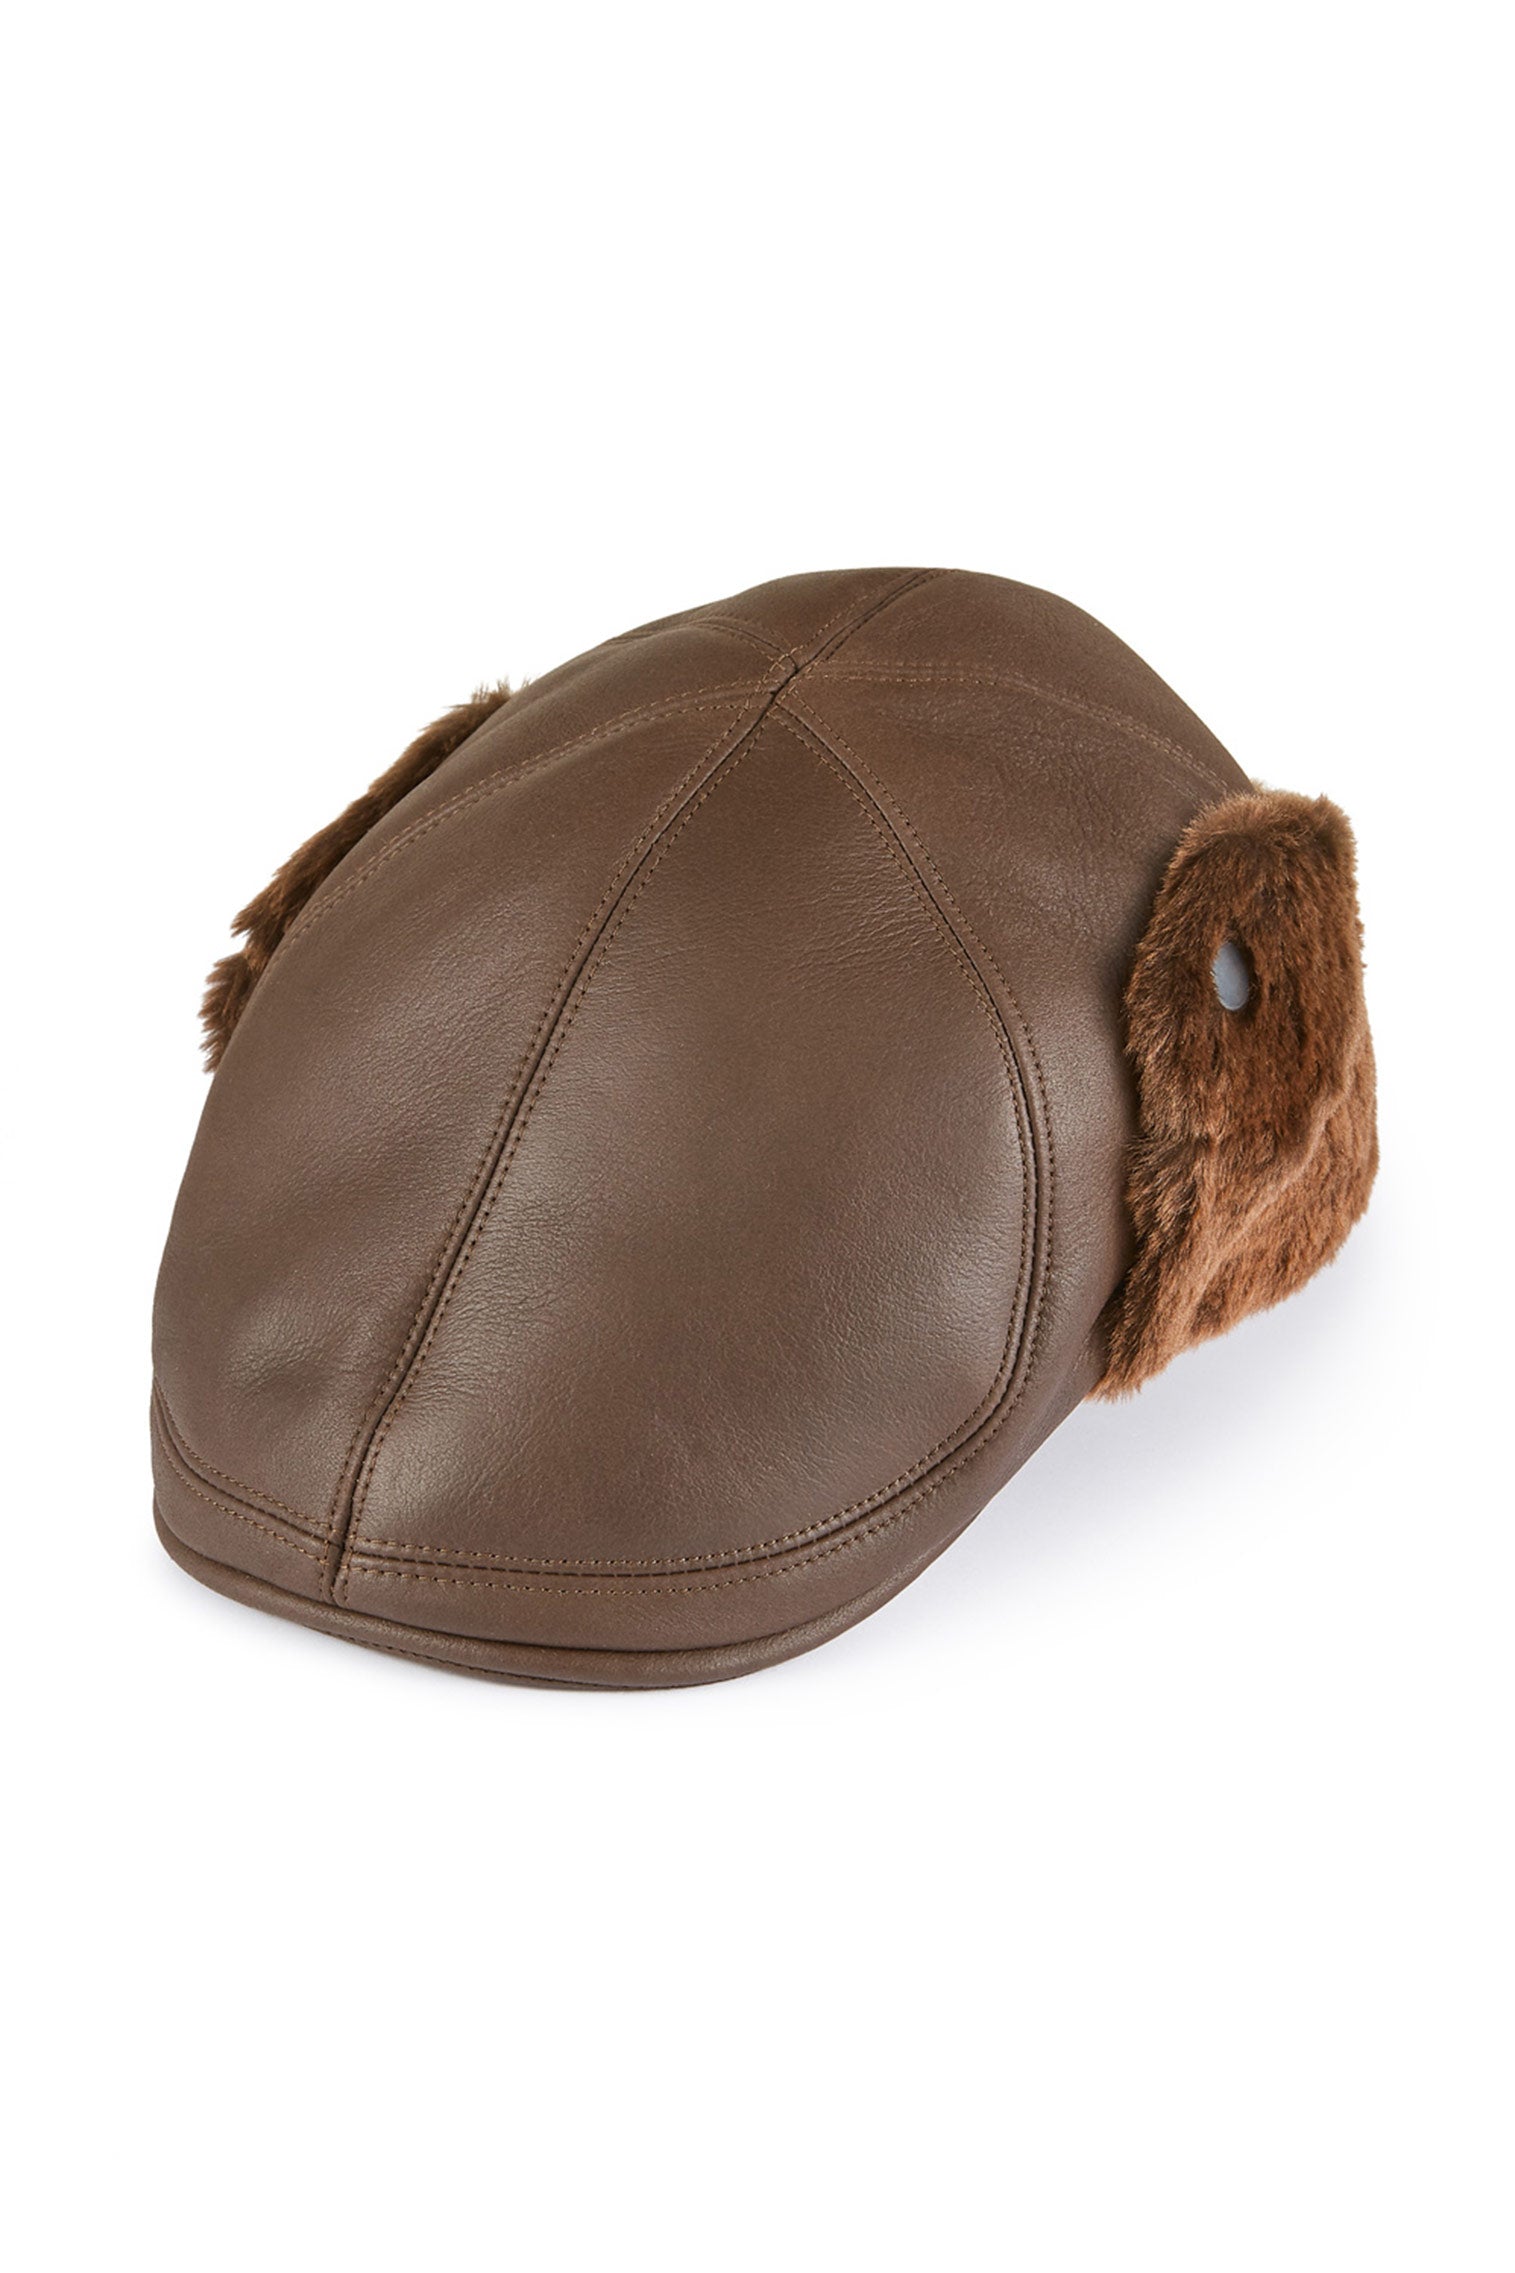 Alberta Leather Flat Cap - Men's Hats - Lock & Co. Hatters London UK